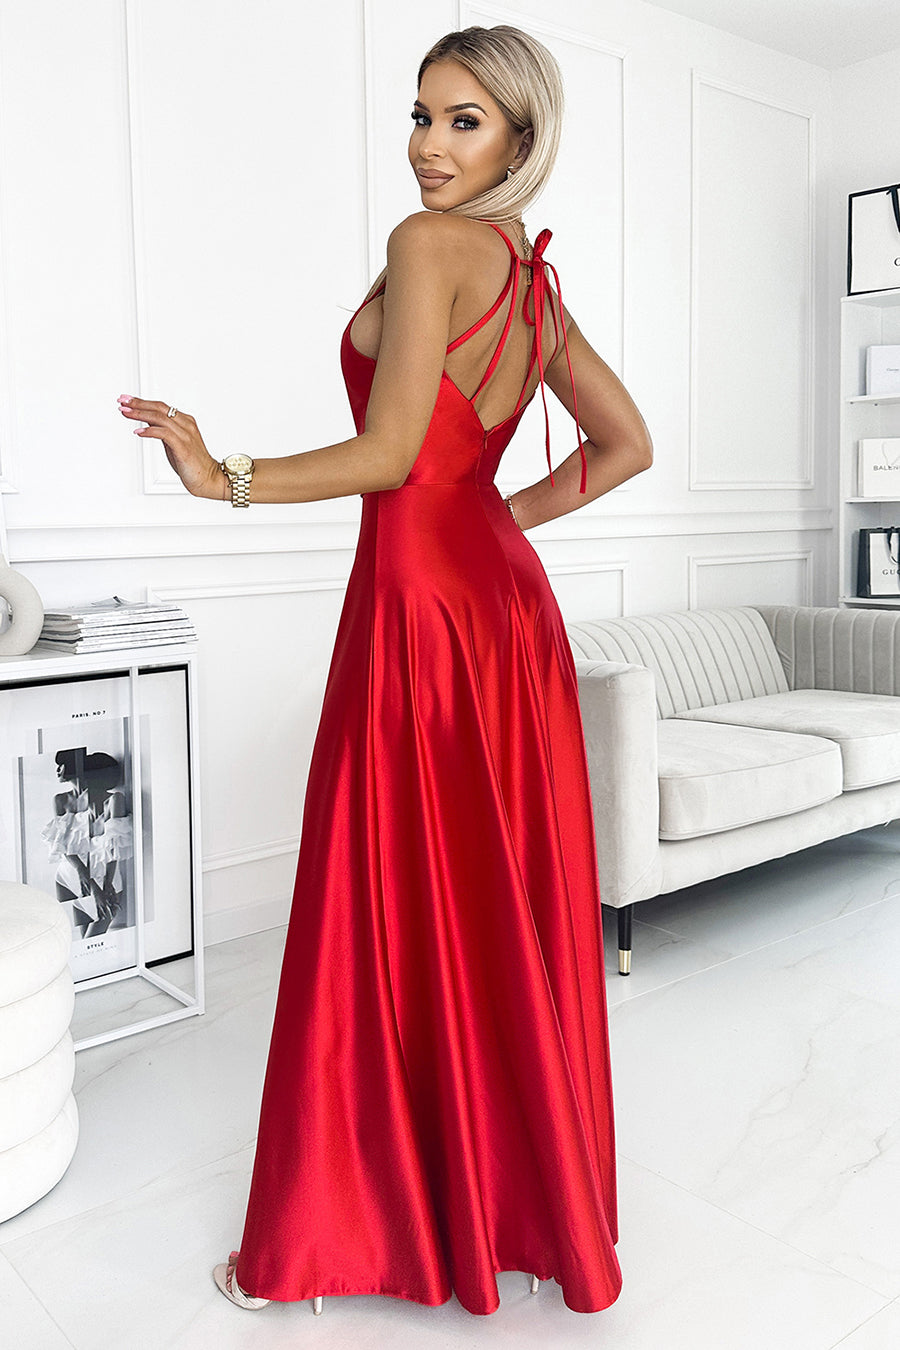 Γυναικείο φόρεμα Lucciana, Κόκκινο 4